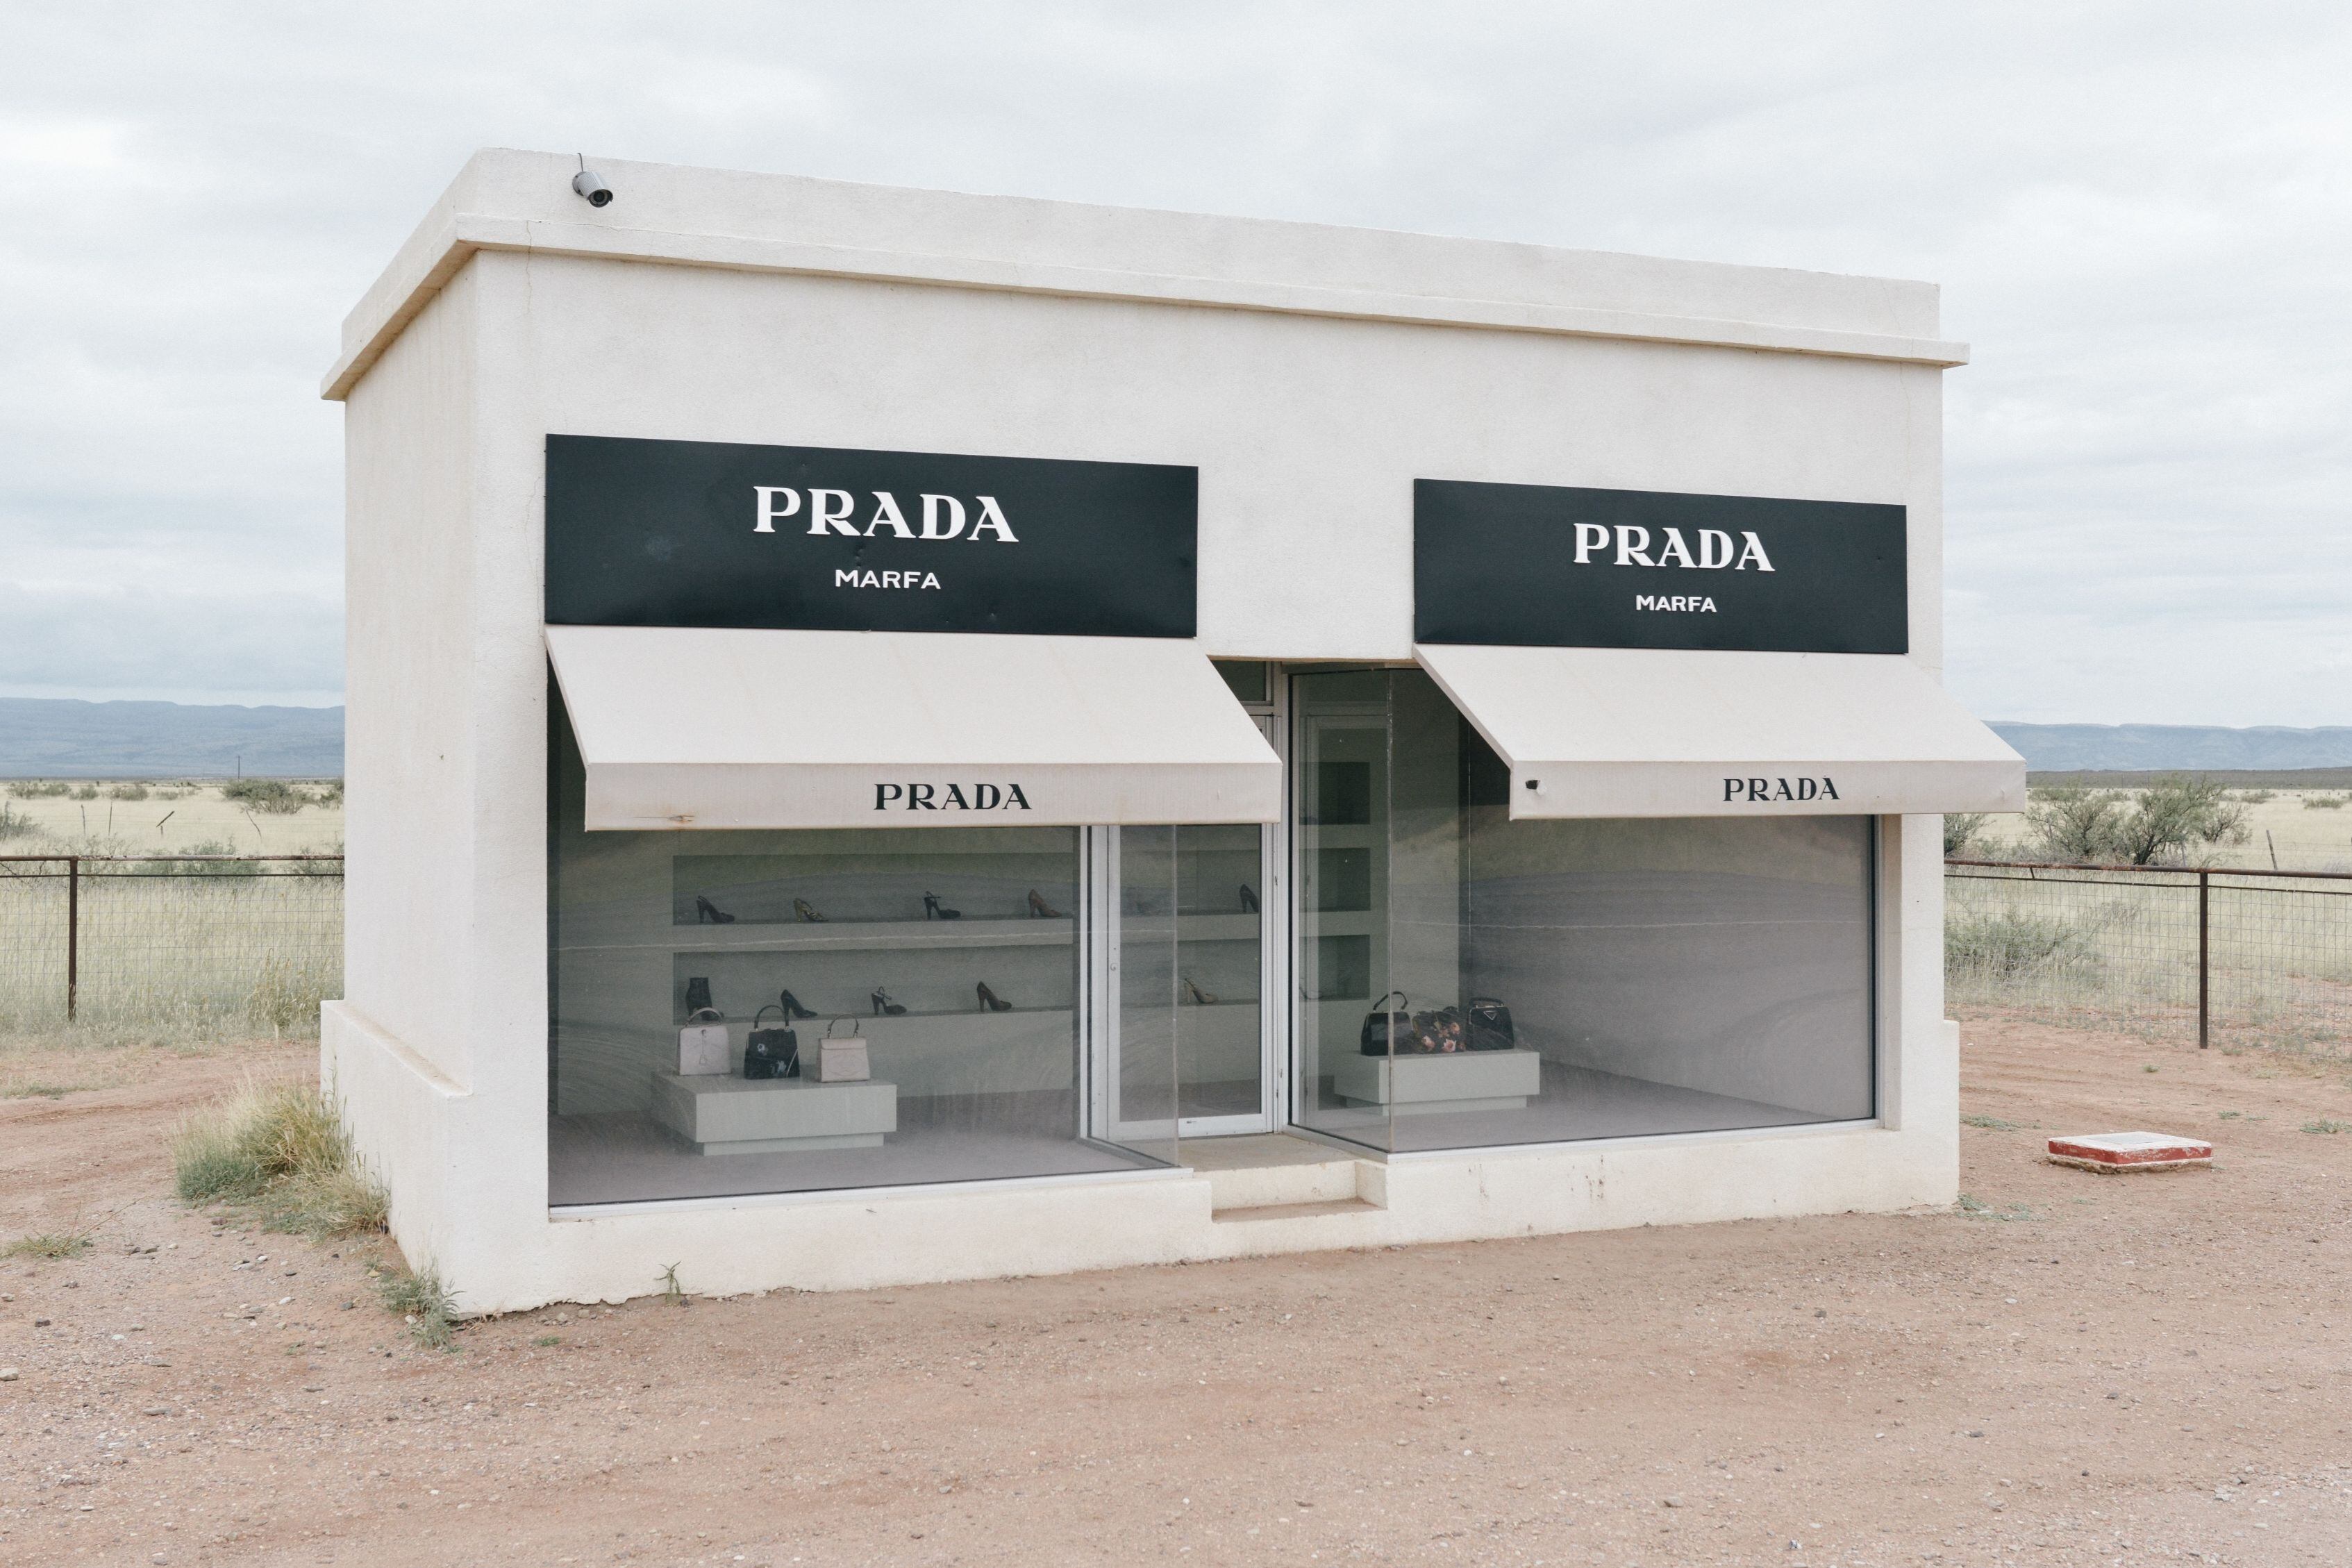 La tienda de Prada en el desierto de Marfa.